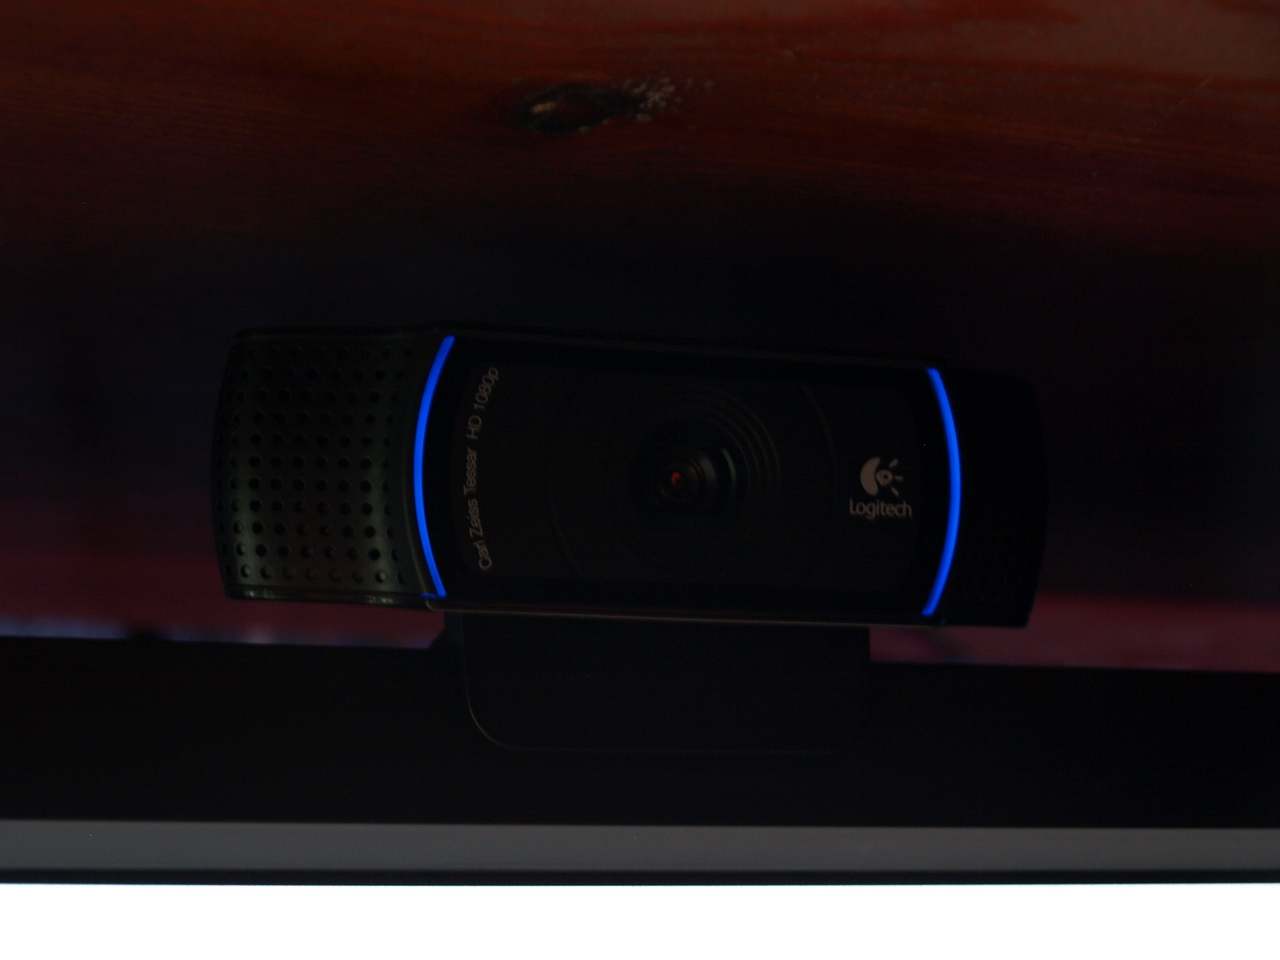 Logitech C920 HD Pro Webcam Review